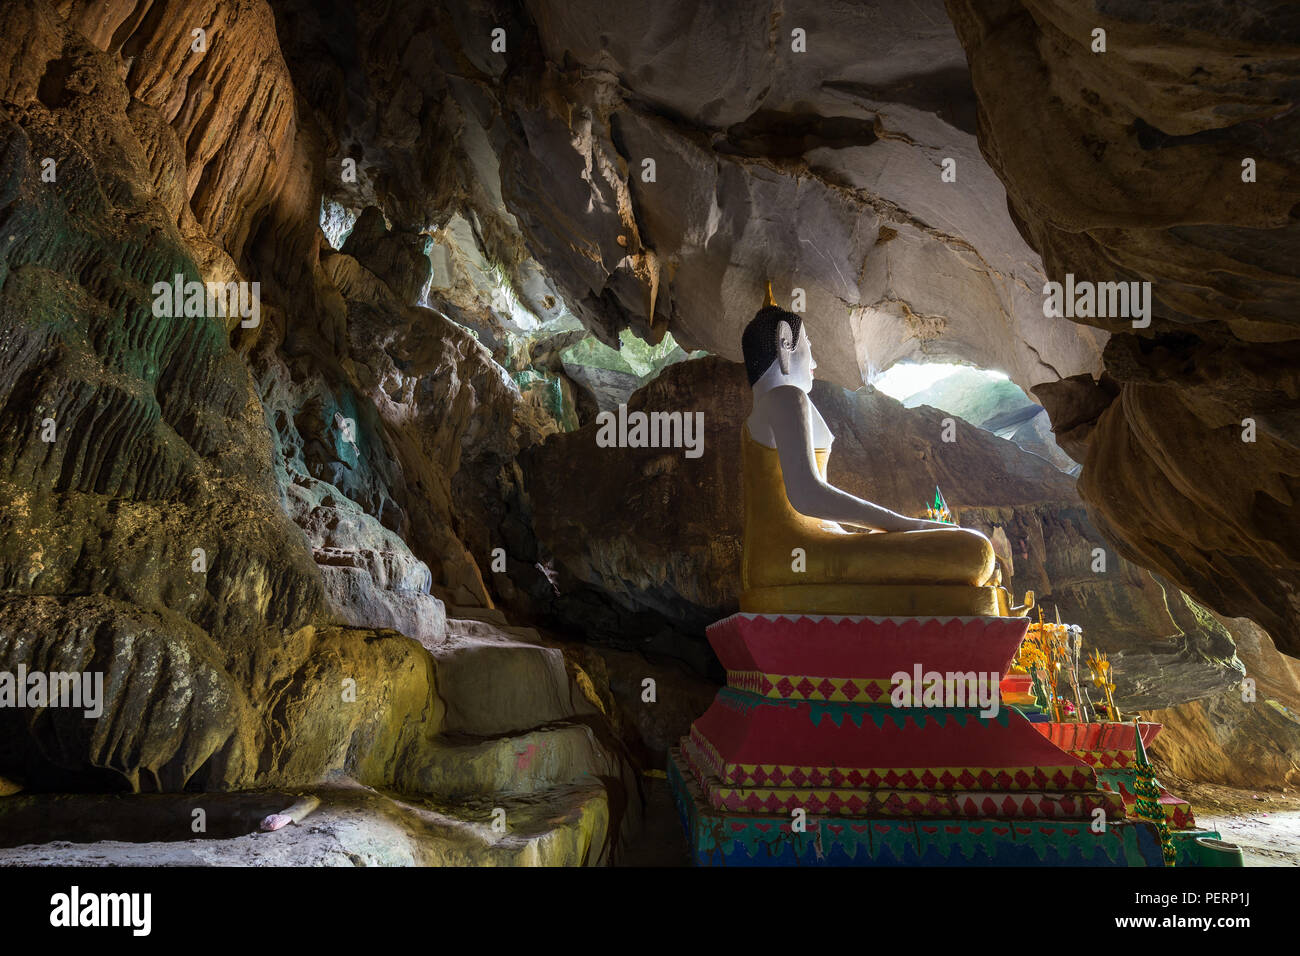 Statua di Budda seduto all'interno dell'Tham Hoi grotta vicino Vang Vieng, Provincia di Vientiane, Laos. Foto Stock